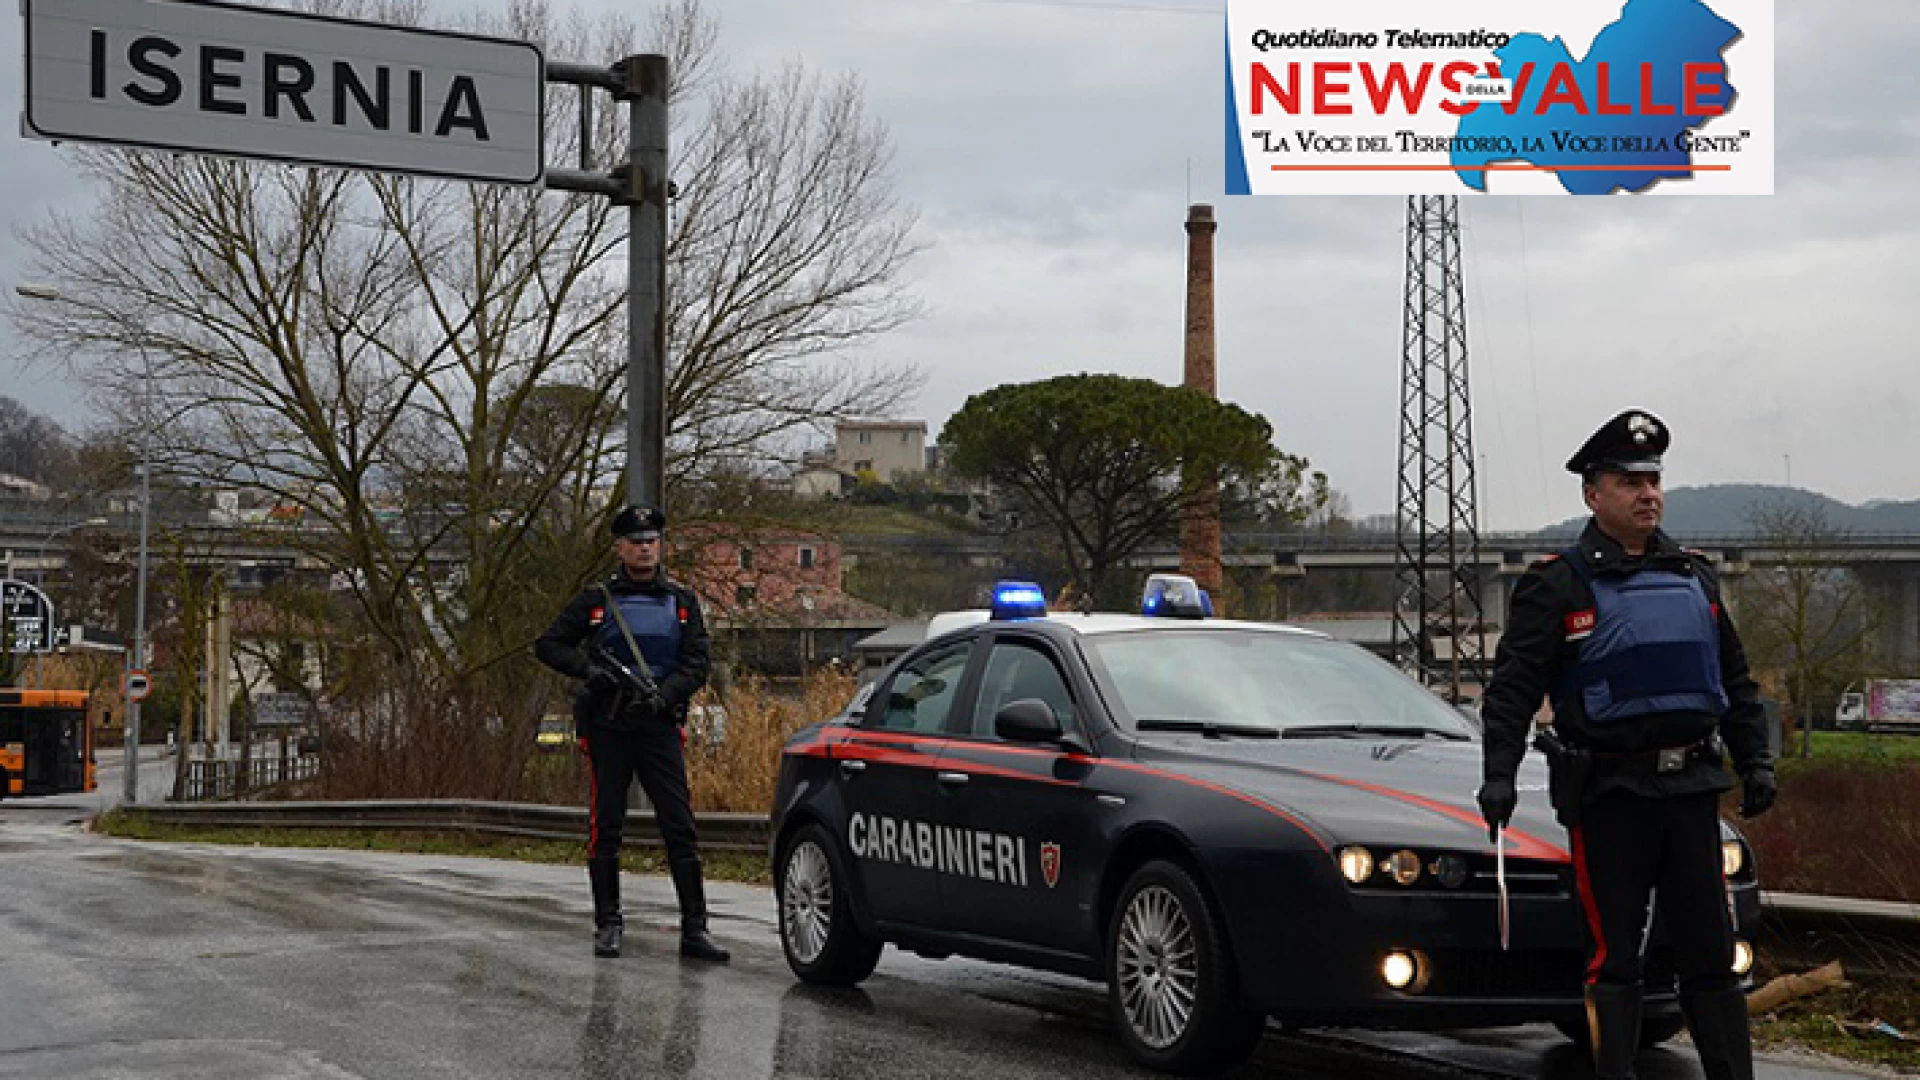 Isernia: Controlli antidroga dei Carabinieri, quattro persone denunciate per detenzione e spaccio di stupefacenti. Sotto sequestro hashish e marijuana.